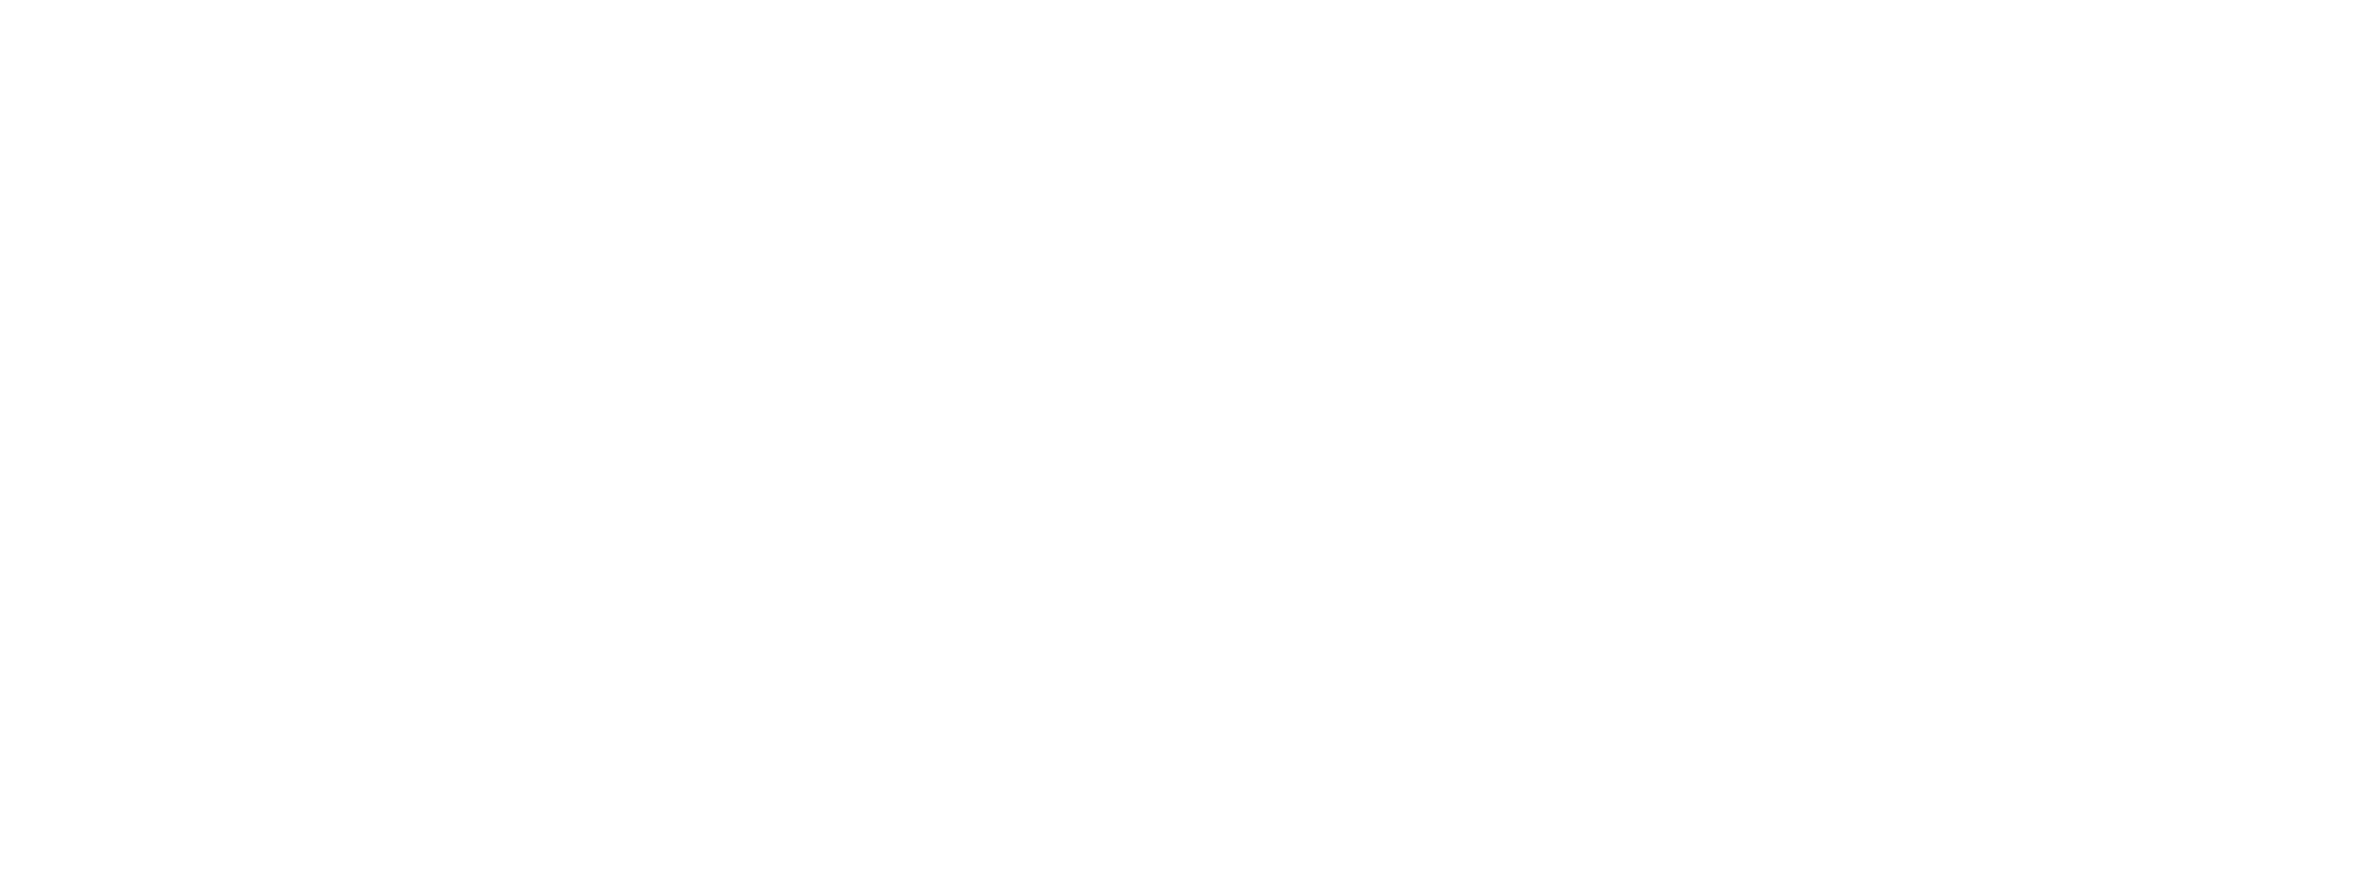 Samoa Restaurant